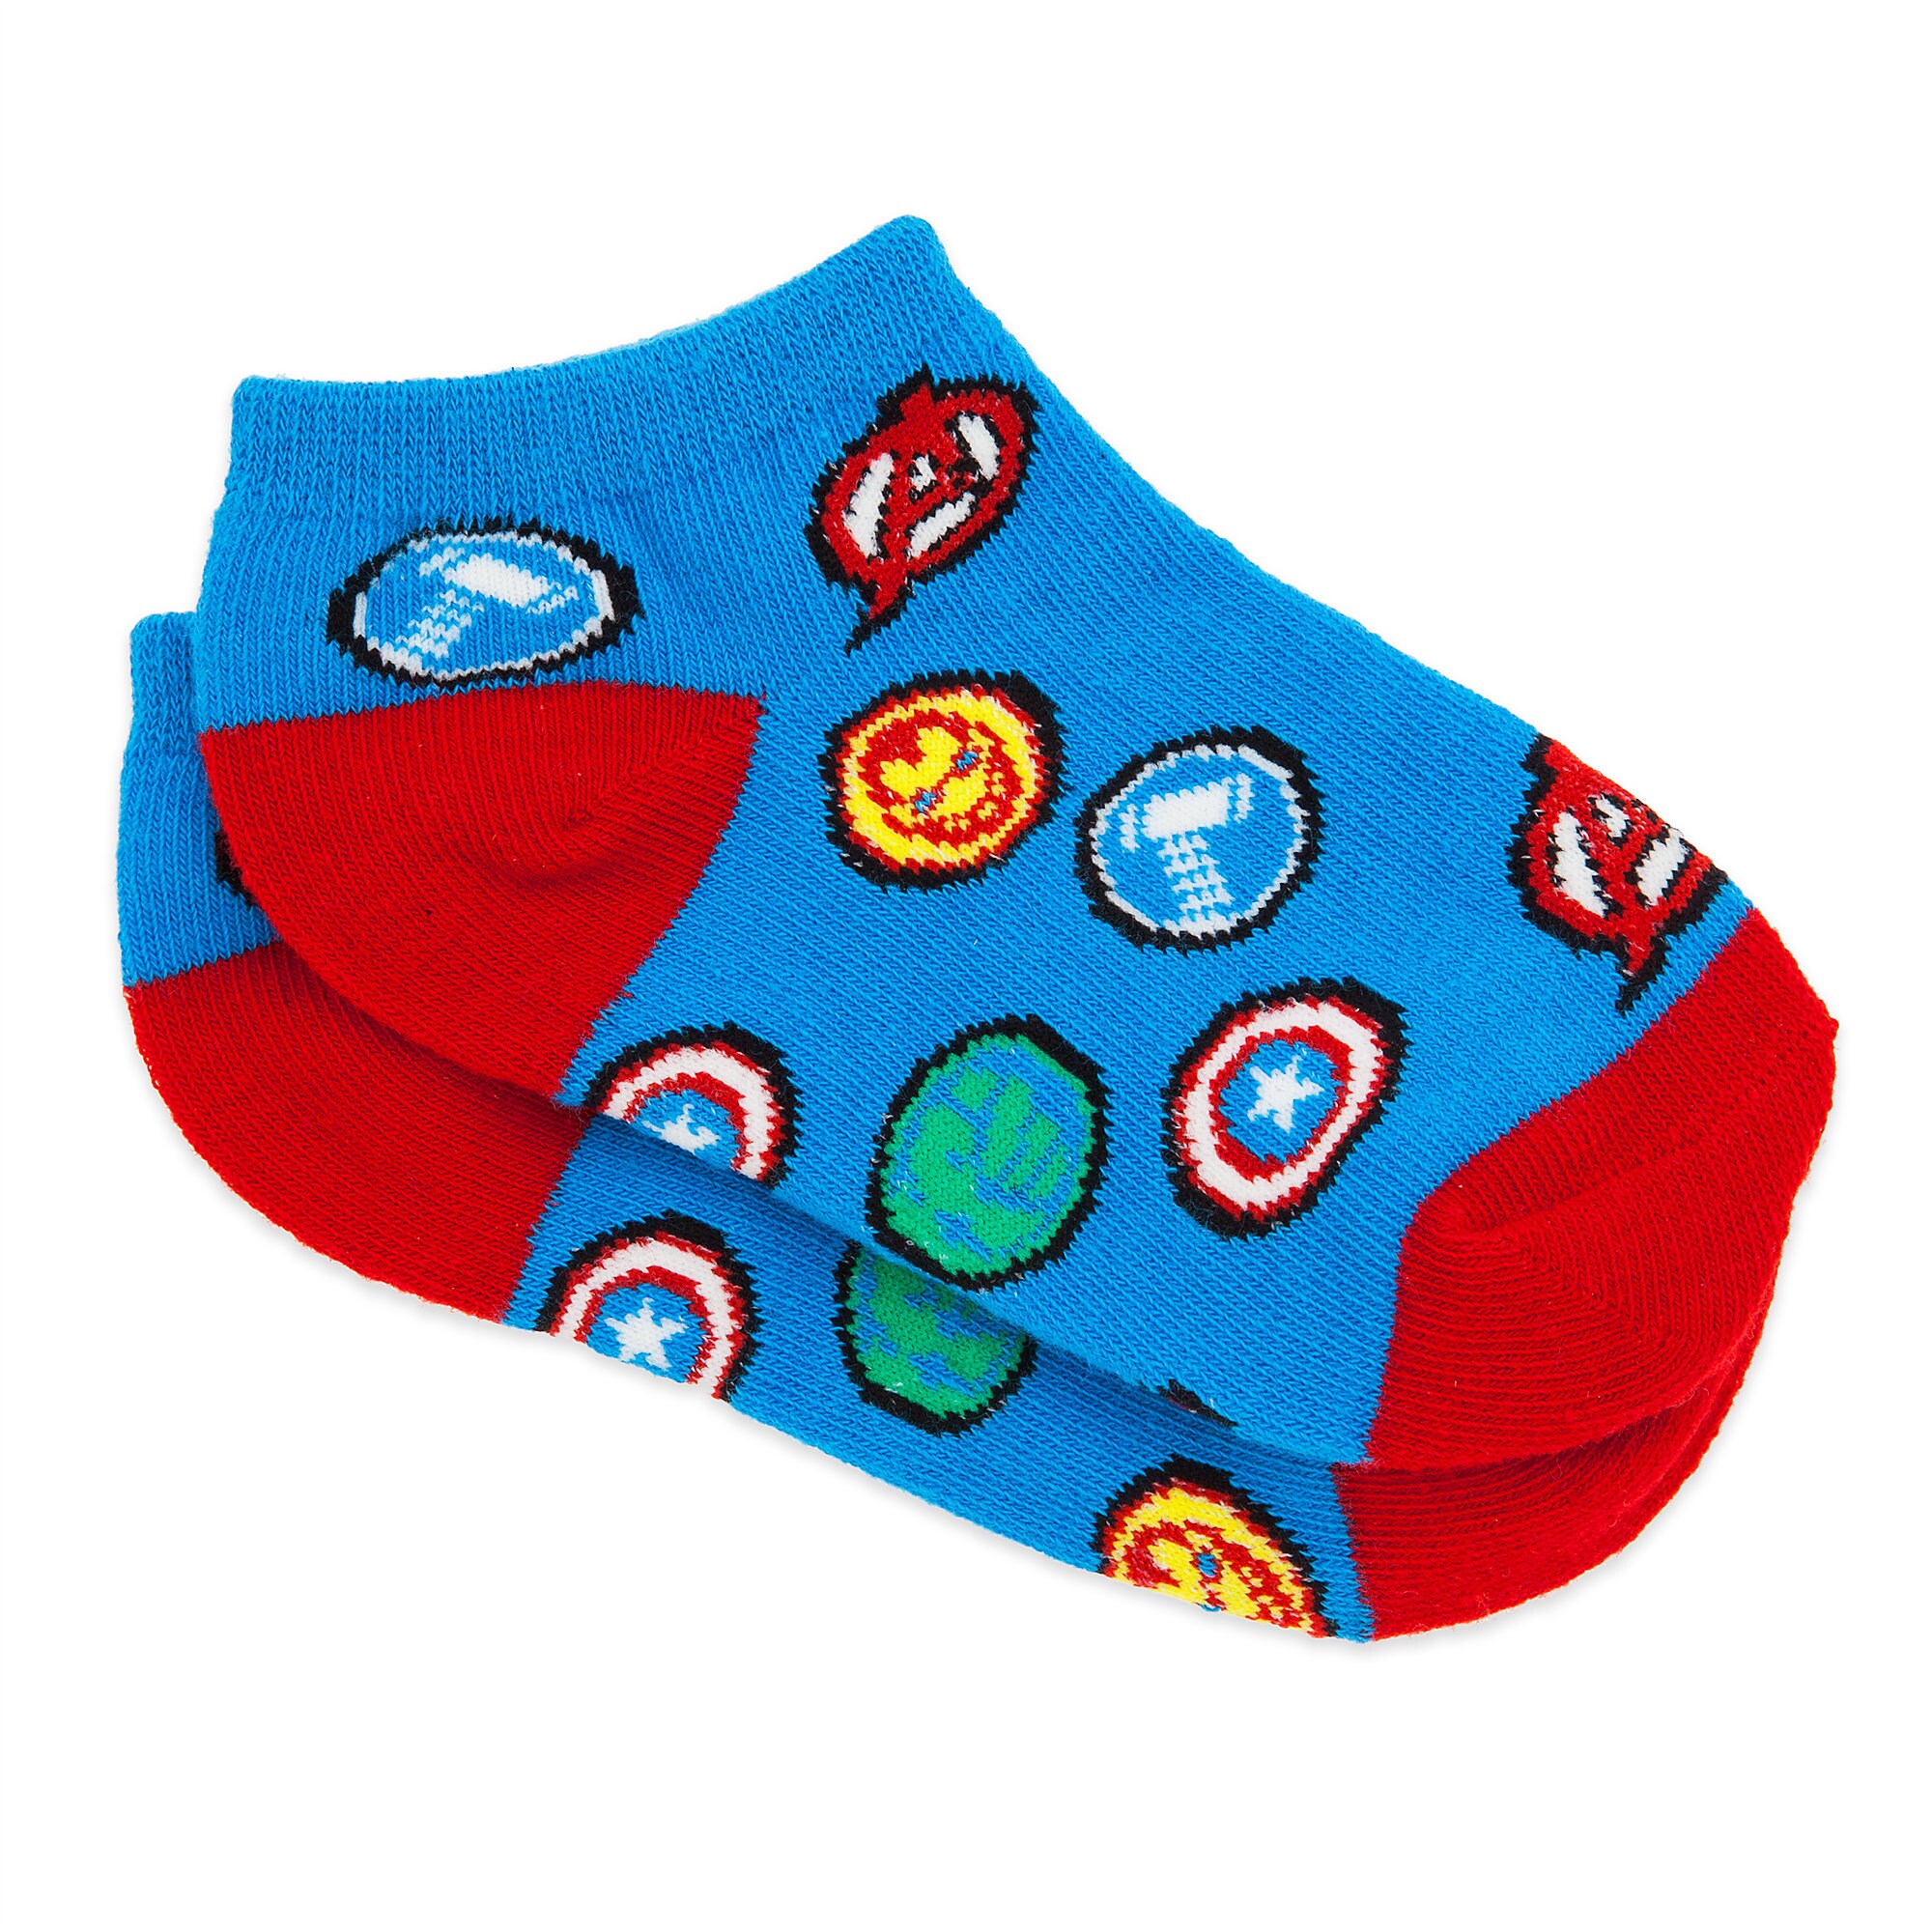 Marvel's Avengers Ankle Socks for Boys